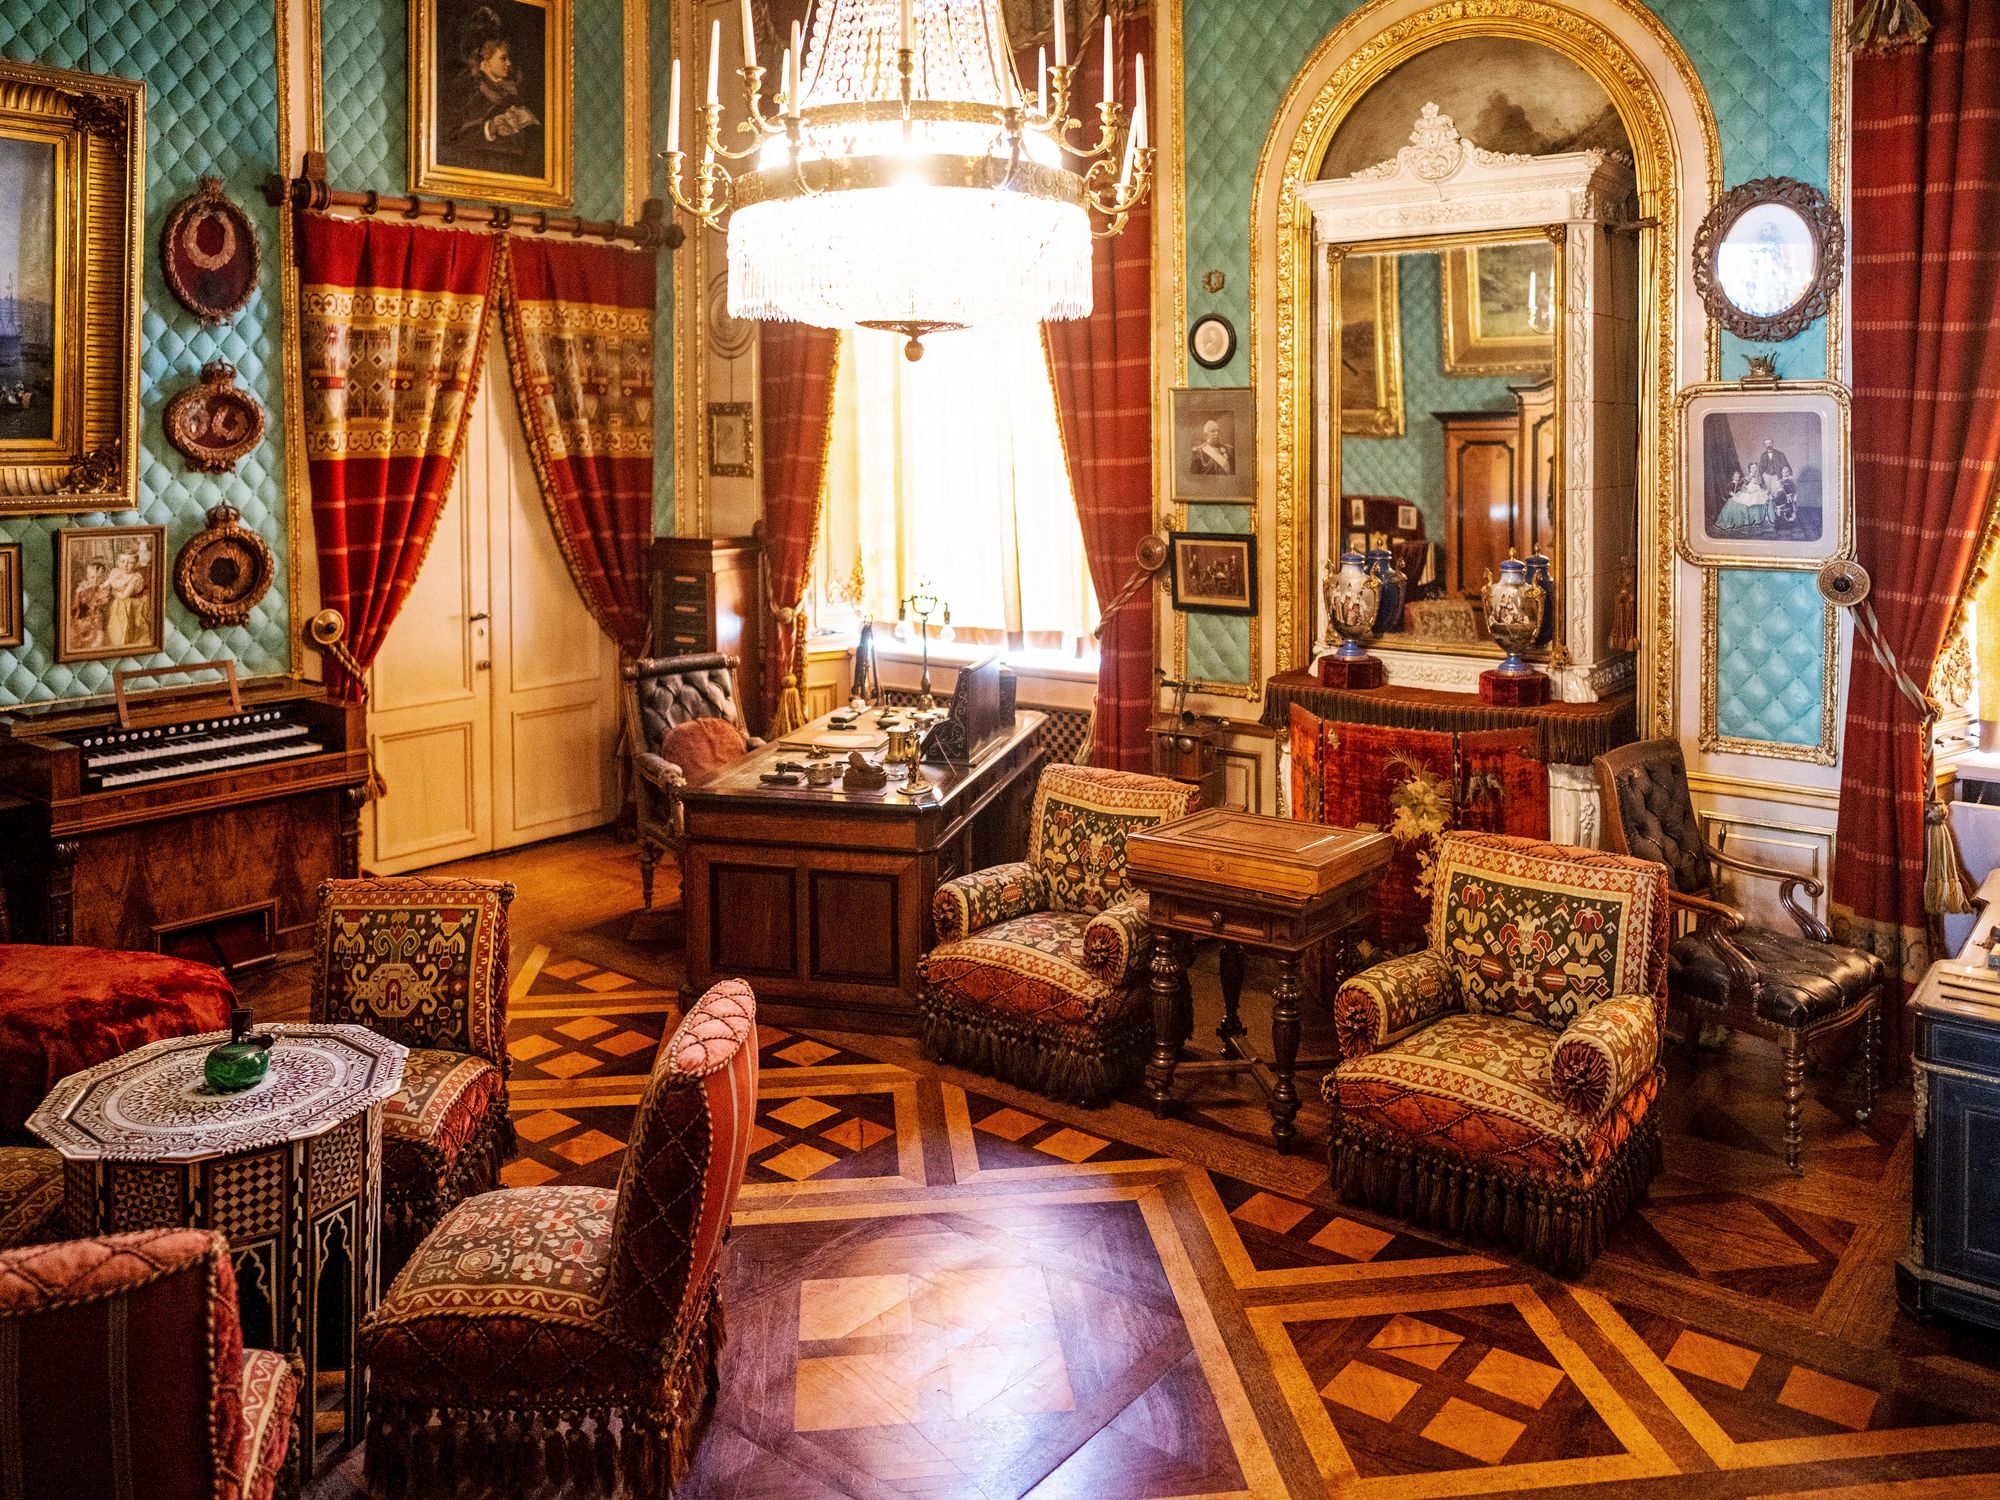 Kuningas Oscar II:n kirjoitushuone 1800-luvun lopulta on jätetty sellaiseksi kuin se oli kuninkaan kuollessa. © Tuukka Ervasti